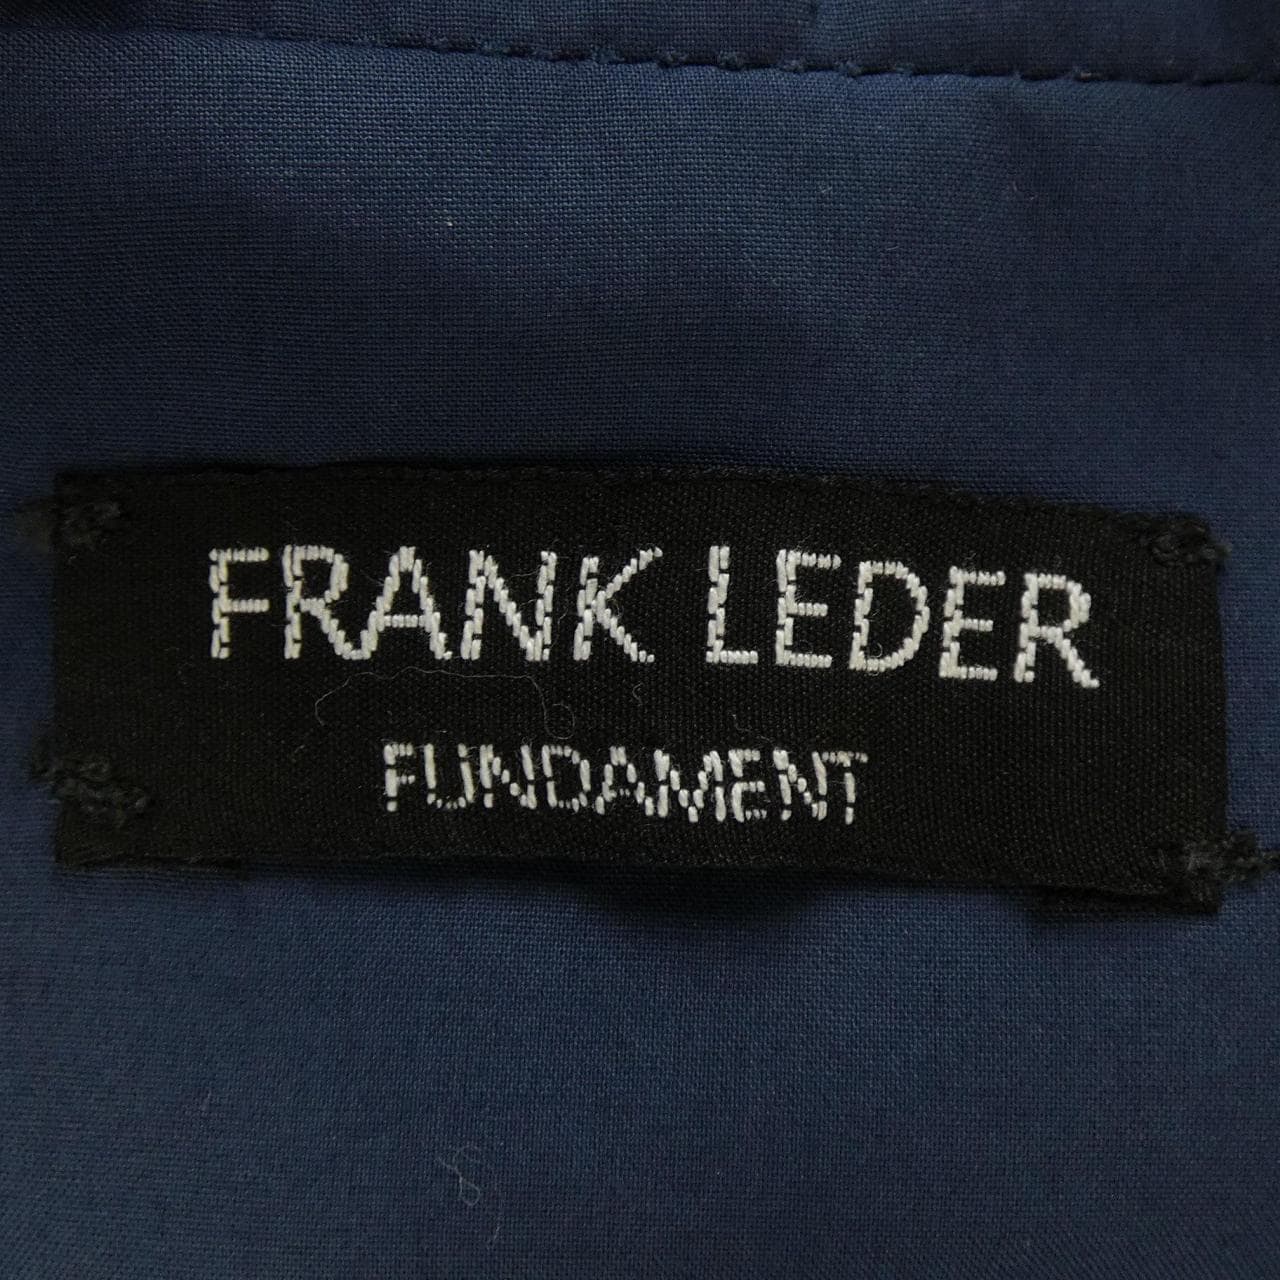 フランクリーダー FRANK LEDER ジャケット